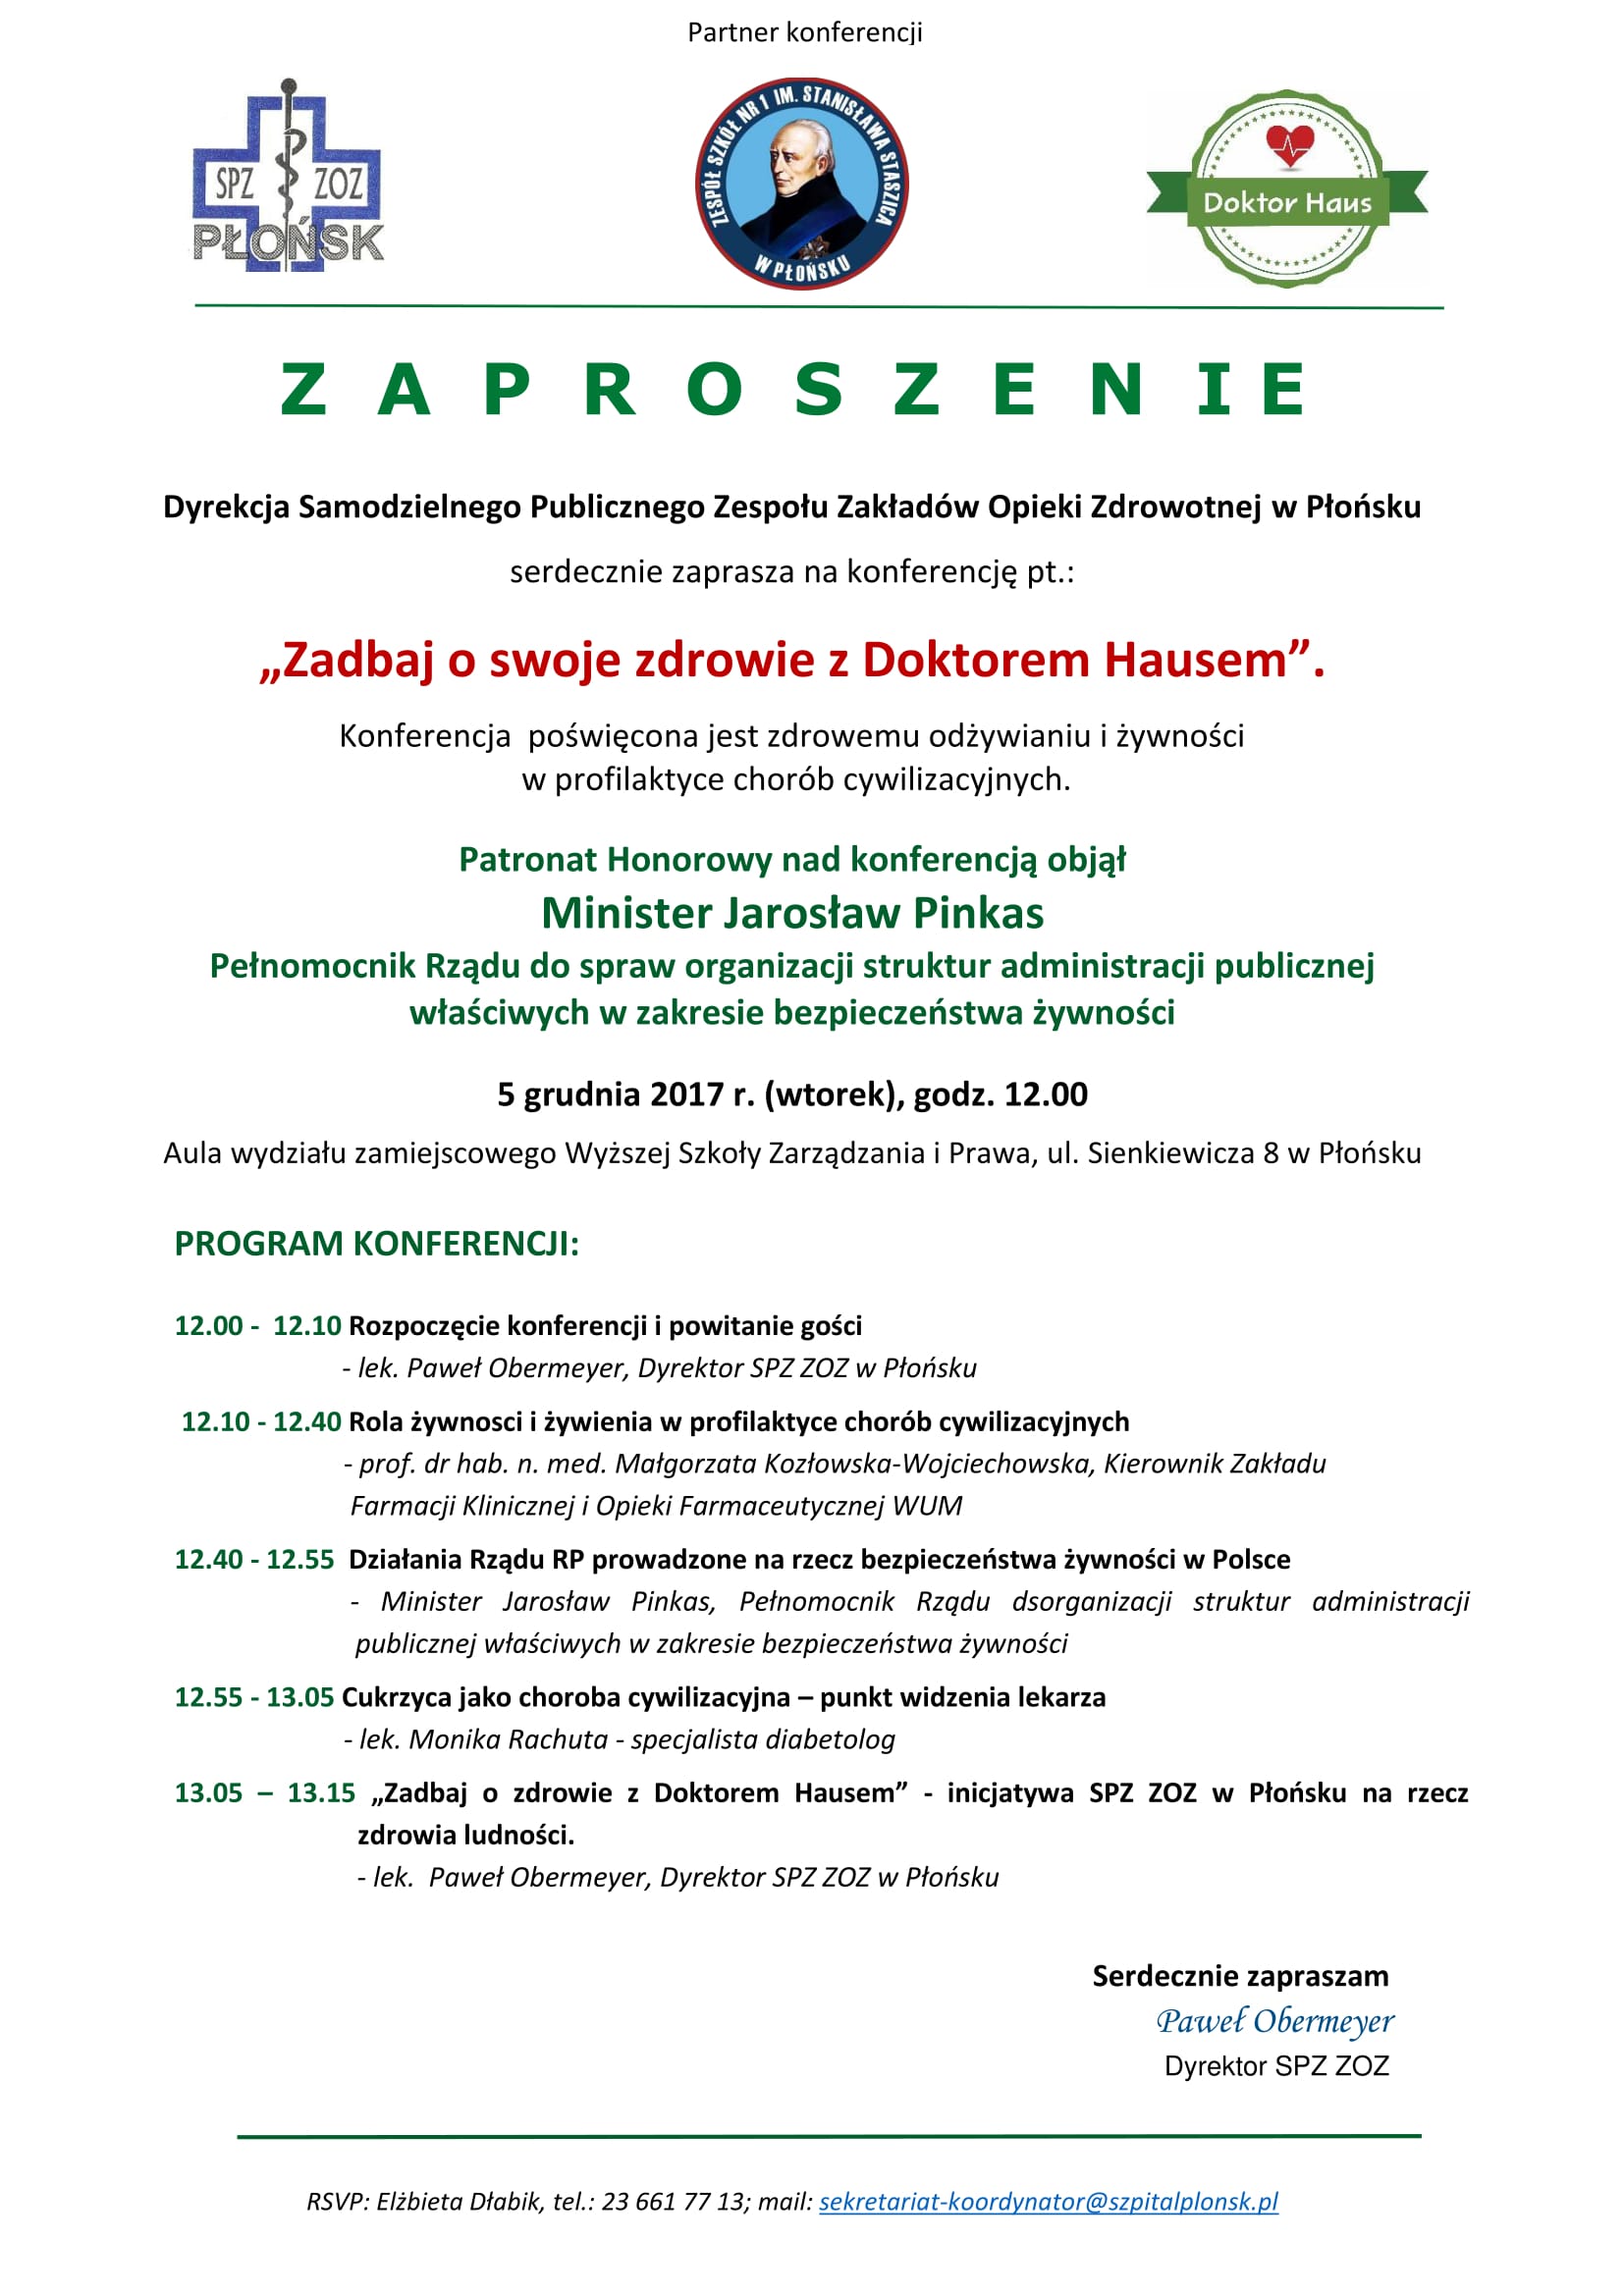 Zaproszenie 5 grudnia 2017 Płońsk 1 1